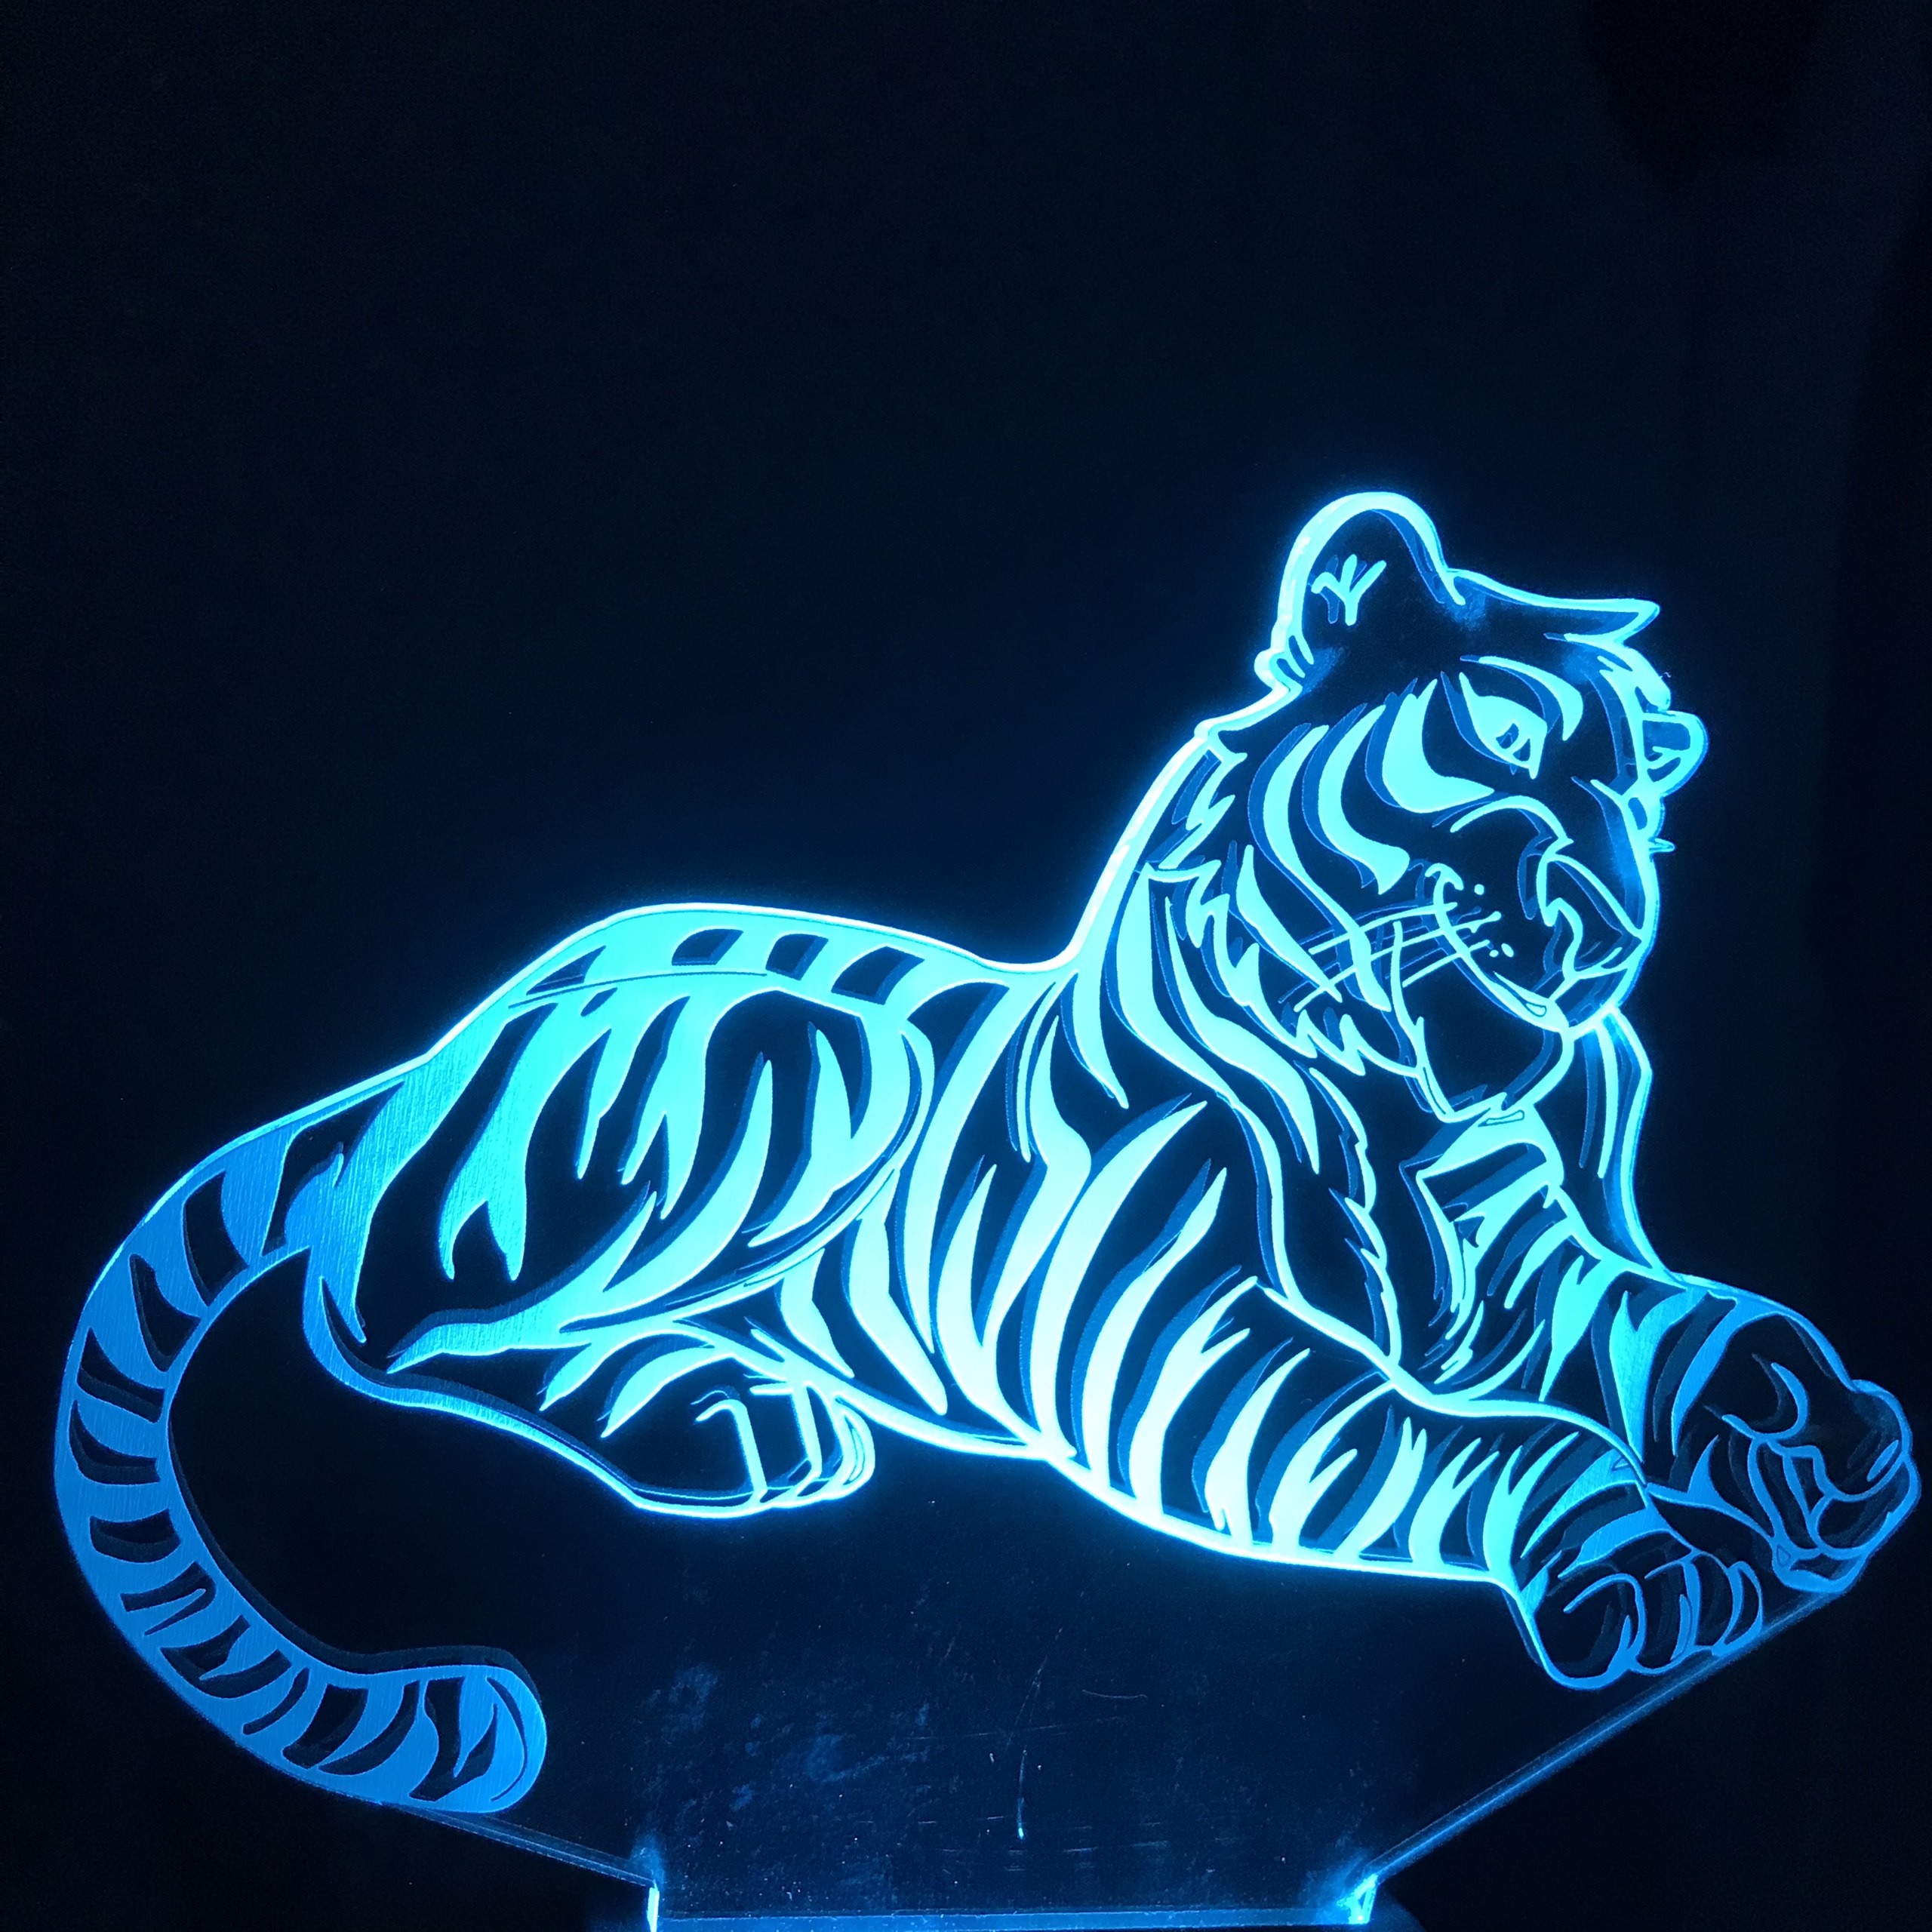 Đèn LED con hổ 3D là lựa chọn hoàn hảo cho không gian của bạn. Với ánh sáng mềm mại và ấm áp, chúng tôi đã đảm bảo sẽ mang đến cho bạn sự thoải mái và tâm trạng thư giãn tuyệt vời. Hãy để bạn bè và người thân của bạn ngạc nhiên và kinh ngạc trước vẻ đẹp độc đáo của nó.